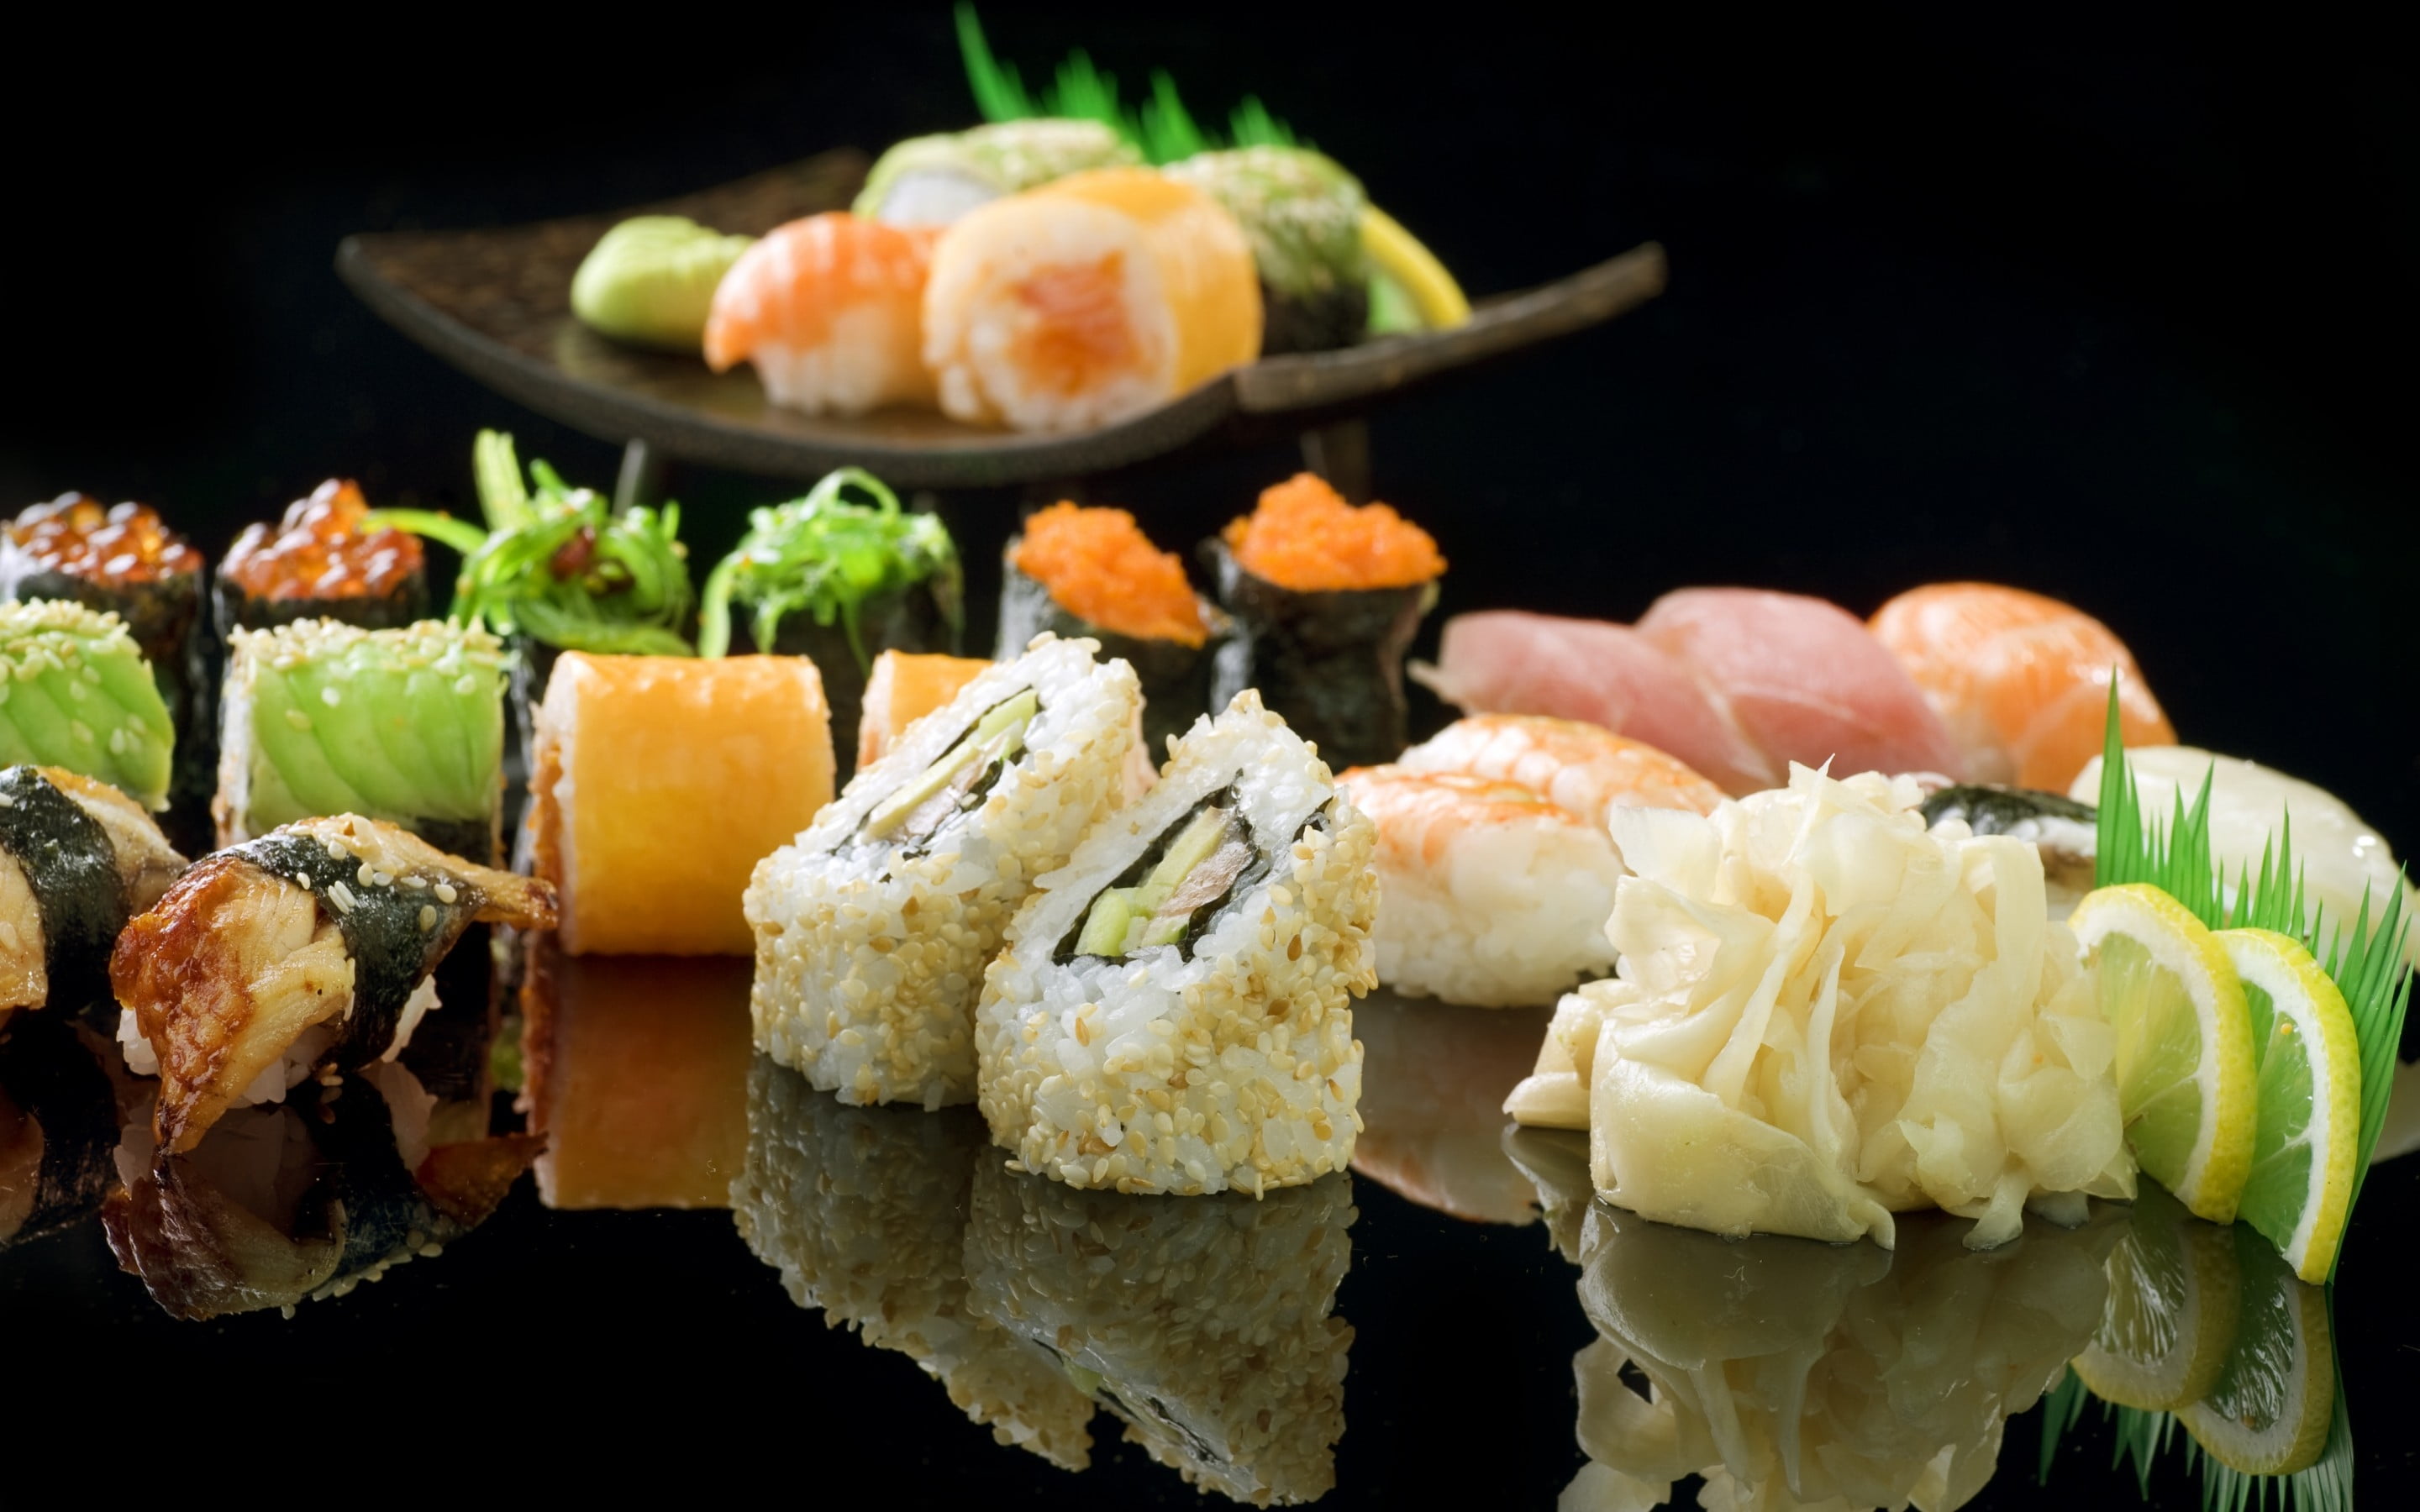 sushi platter, rolls, ginger, shrimp, lemon, fish, eggs, food